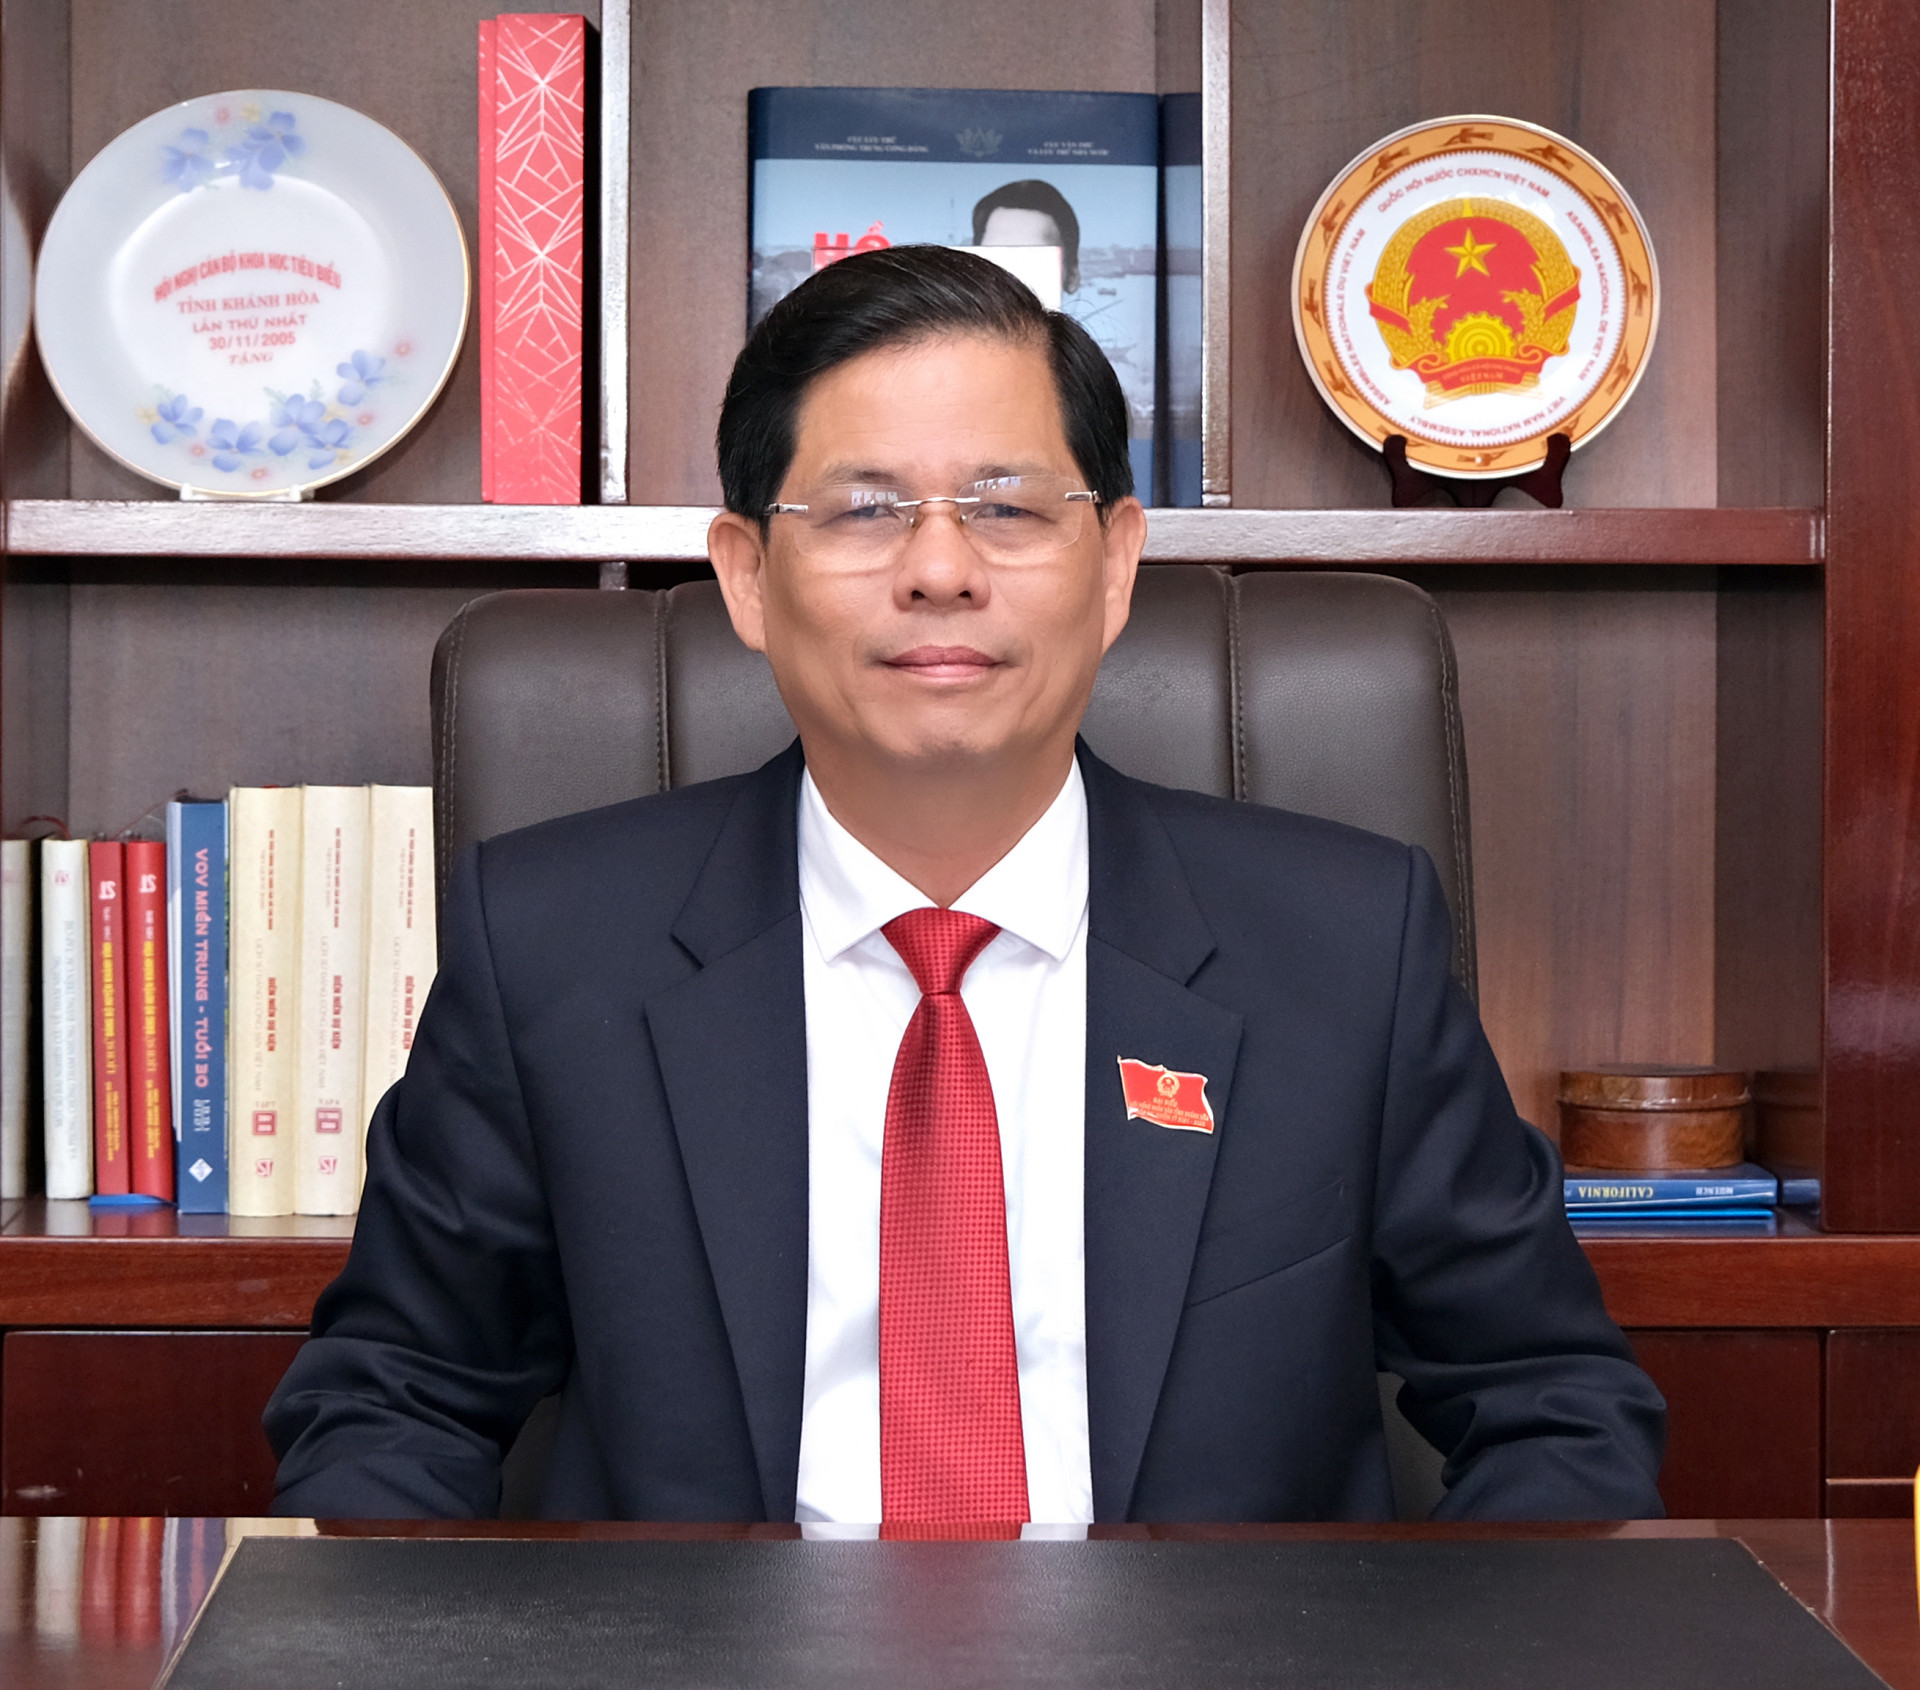 Đồng chí Nguyễn Tấn Tuân - Phó Bí thư Tỉnh ủy, Chủ tịch UBND tỉnh